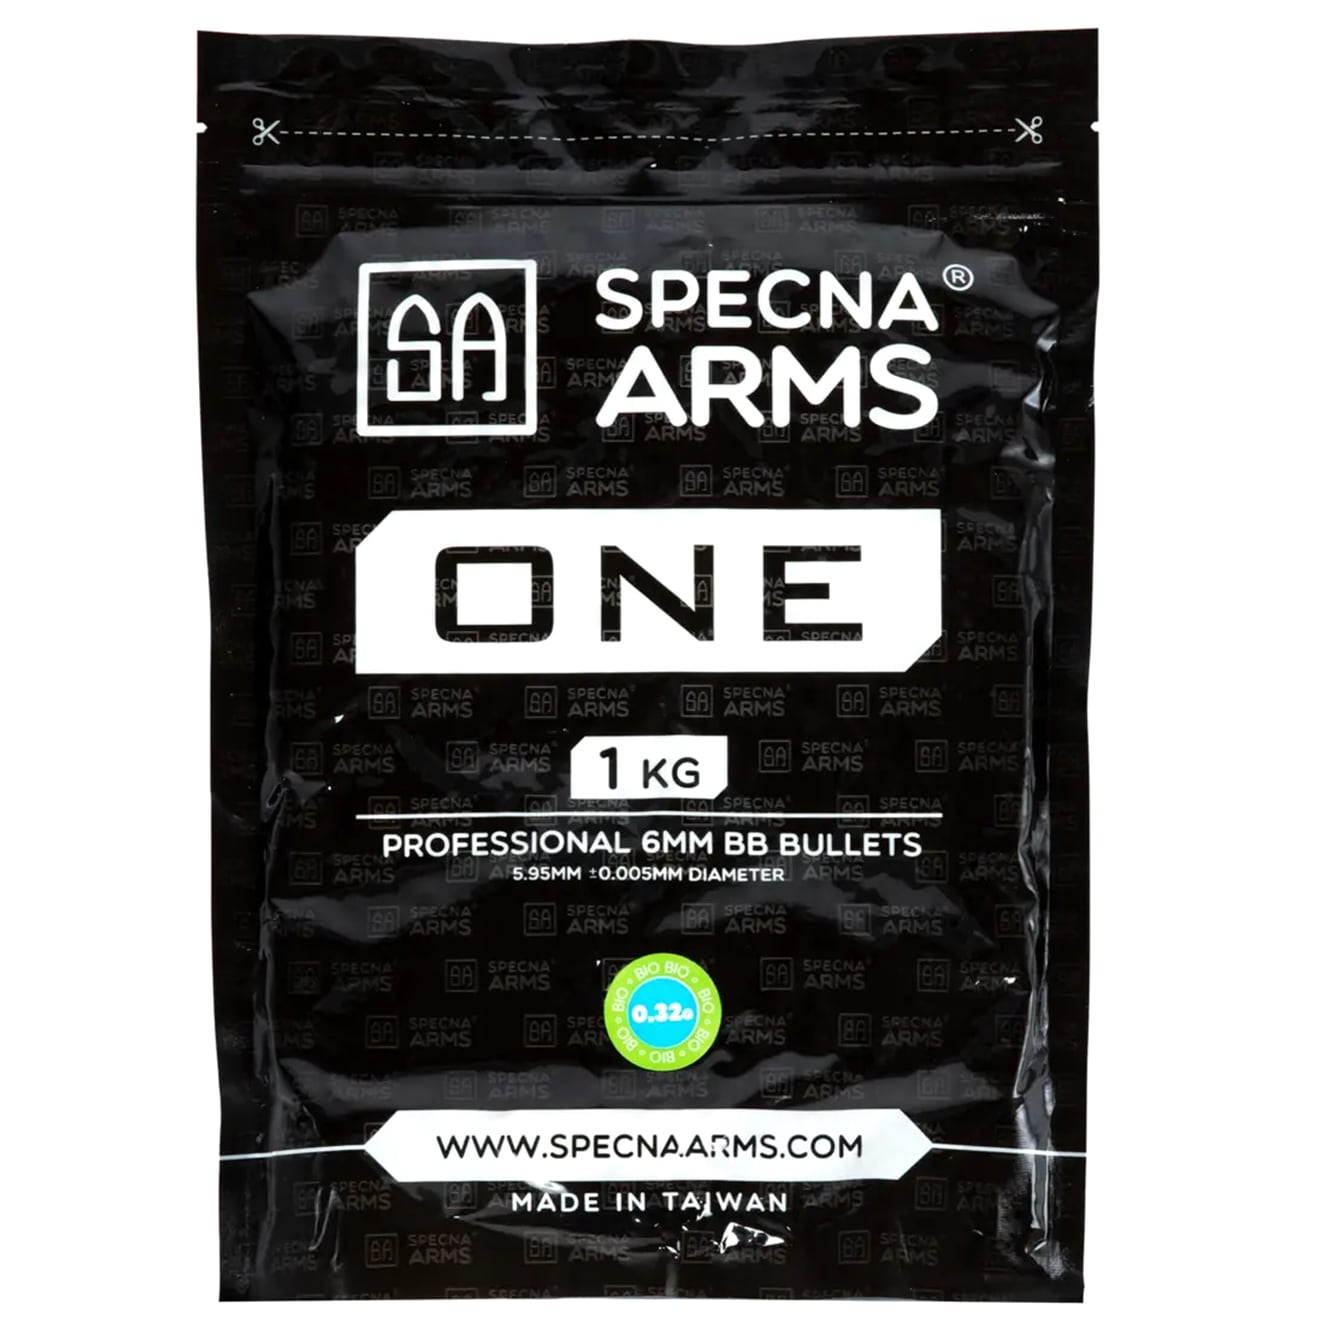 Kulki ASG biodegradowalne Specna Arms One Bio 0,32 g 1 kg - Białe